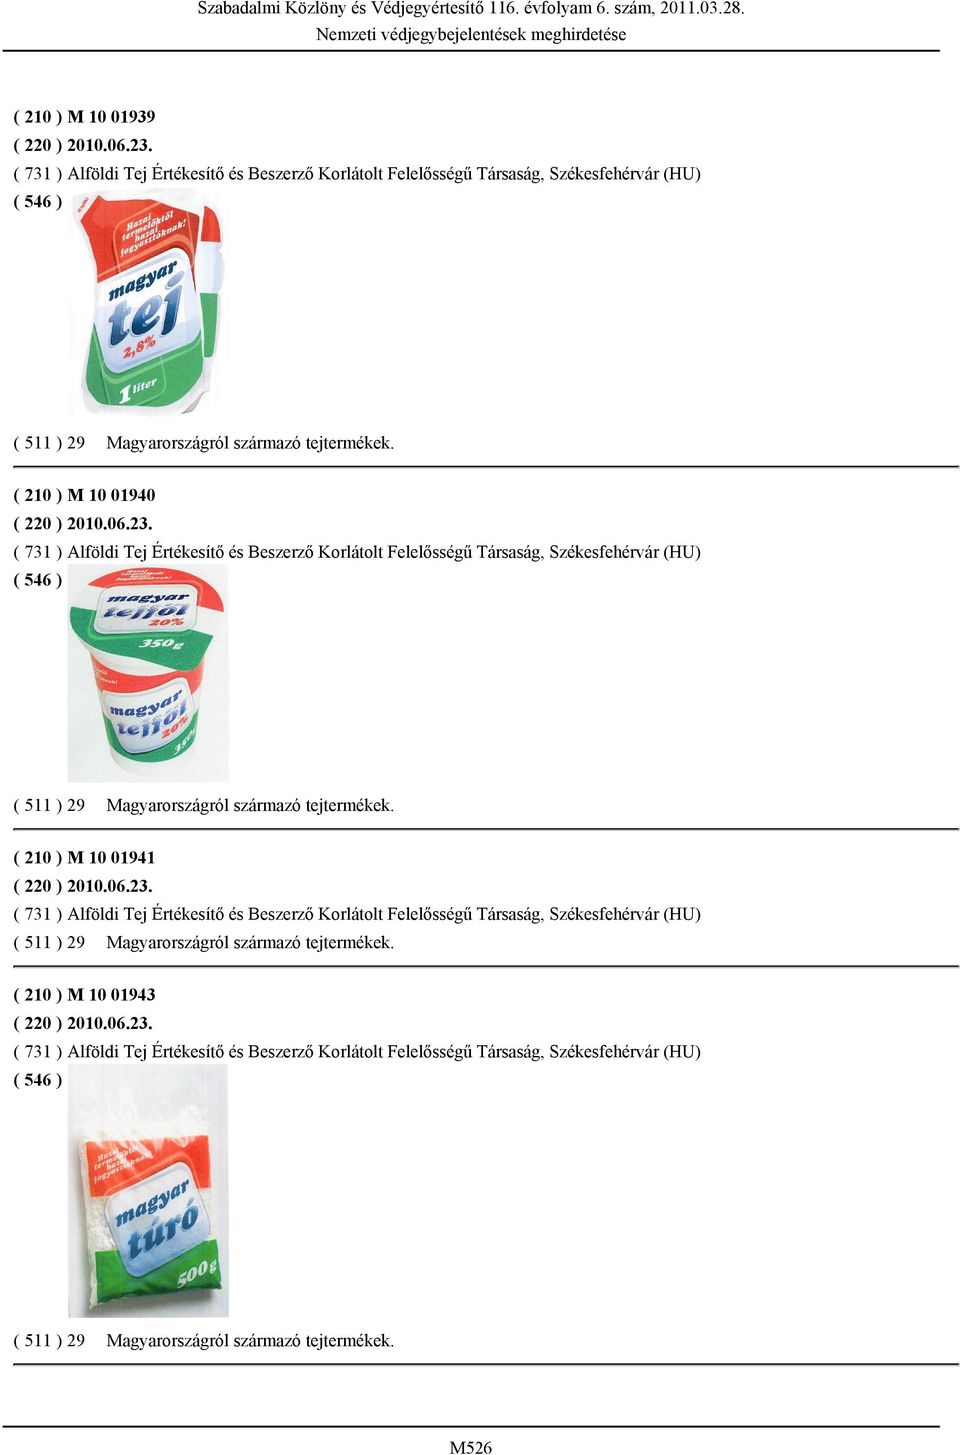 ( 210 ) M 10 01941 ( 220 ) 2010.06.23. ( 731 ) Alföldi Tej Értékesítő és Beszerző Korlátolt Felelősségű Társaság, Székesfehérvár (HU) ( 511 ) 29 Magyarországról származó tejtermékek.